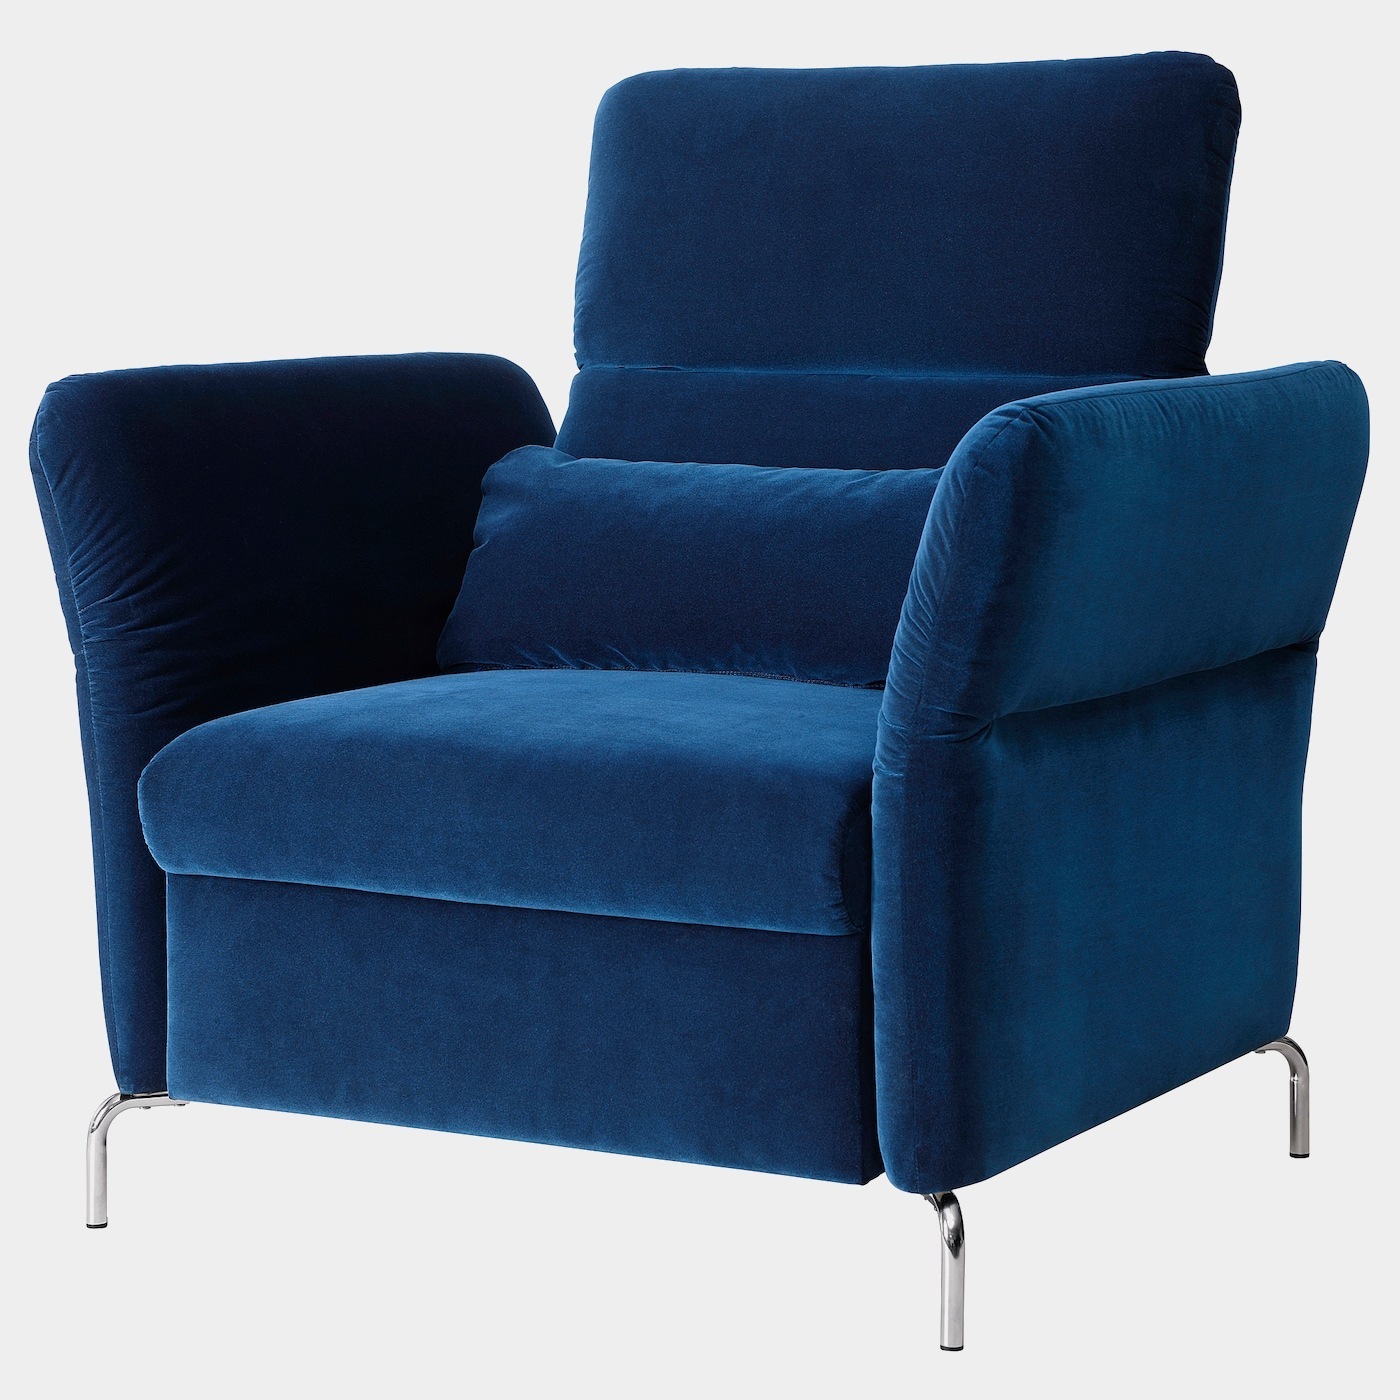 FAMMARP Sessel  -  - Möbel Ideen für dein Zuhause von Home Trends. Möbel Trends von Social Media Influencer für dein Skandi Zuhause.